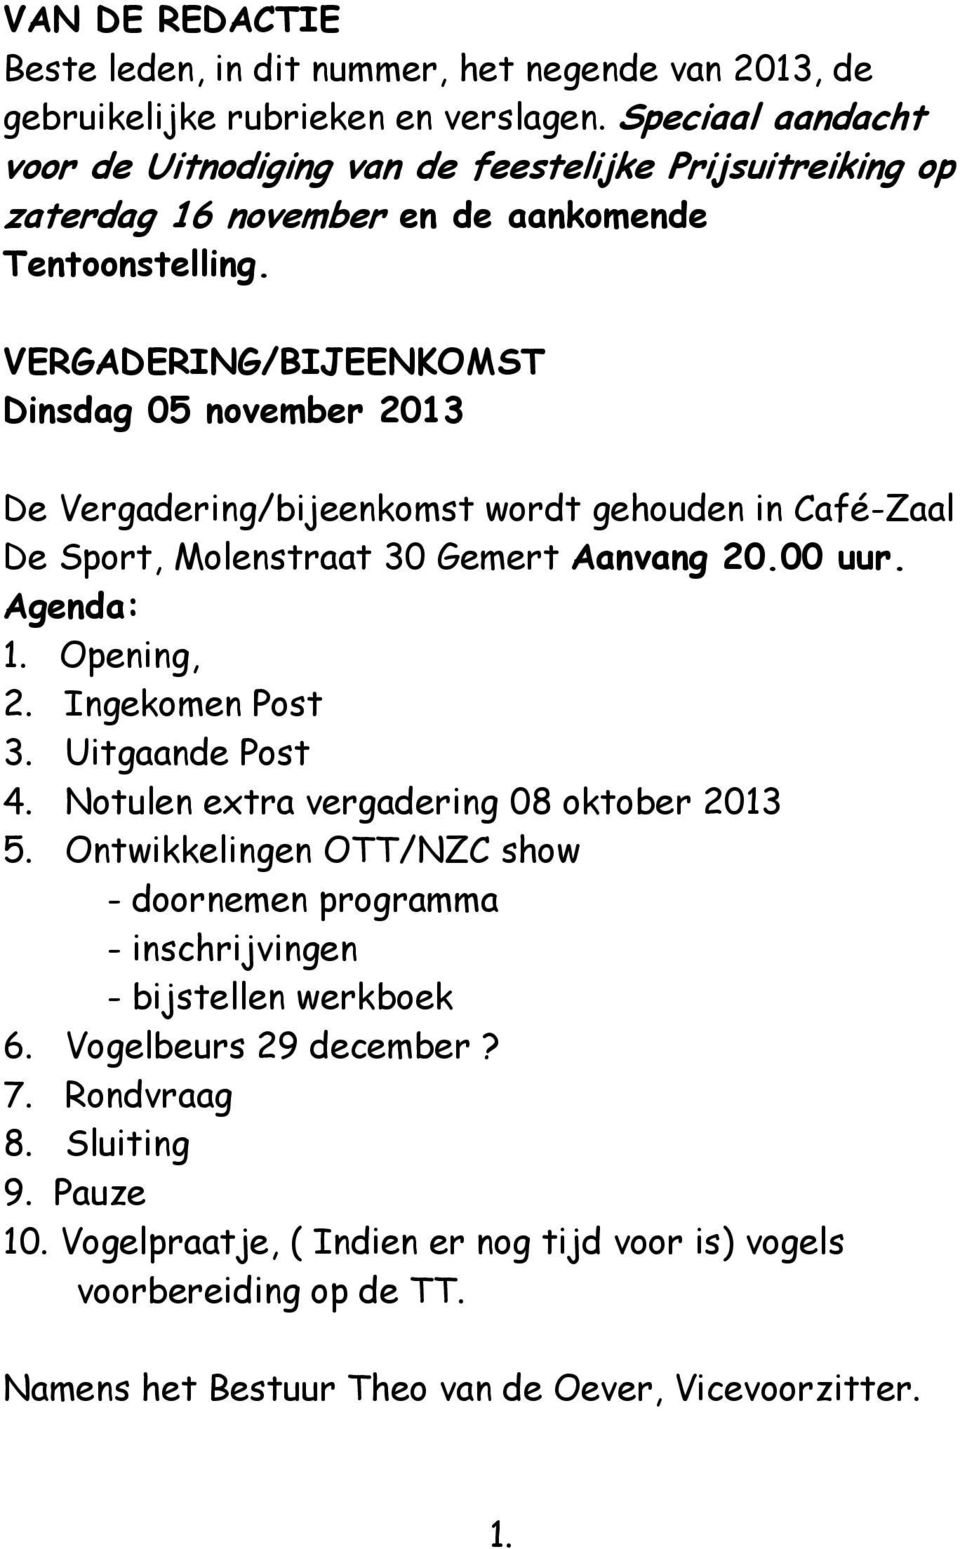 VERGADERING/BIJEENKOMST Dinsdag 05 november 2013 De Vergadering/bijeenkomst wordt gehouden in Café-Zaal De Sport, Molenstraat 30 Gemert Aanvang 20.00 uur. Agenda: 1. Opening, 2. Ingekomen Post 3.